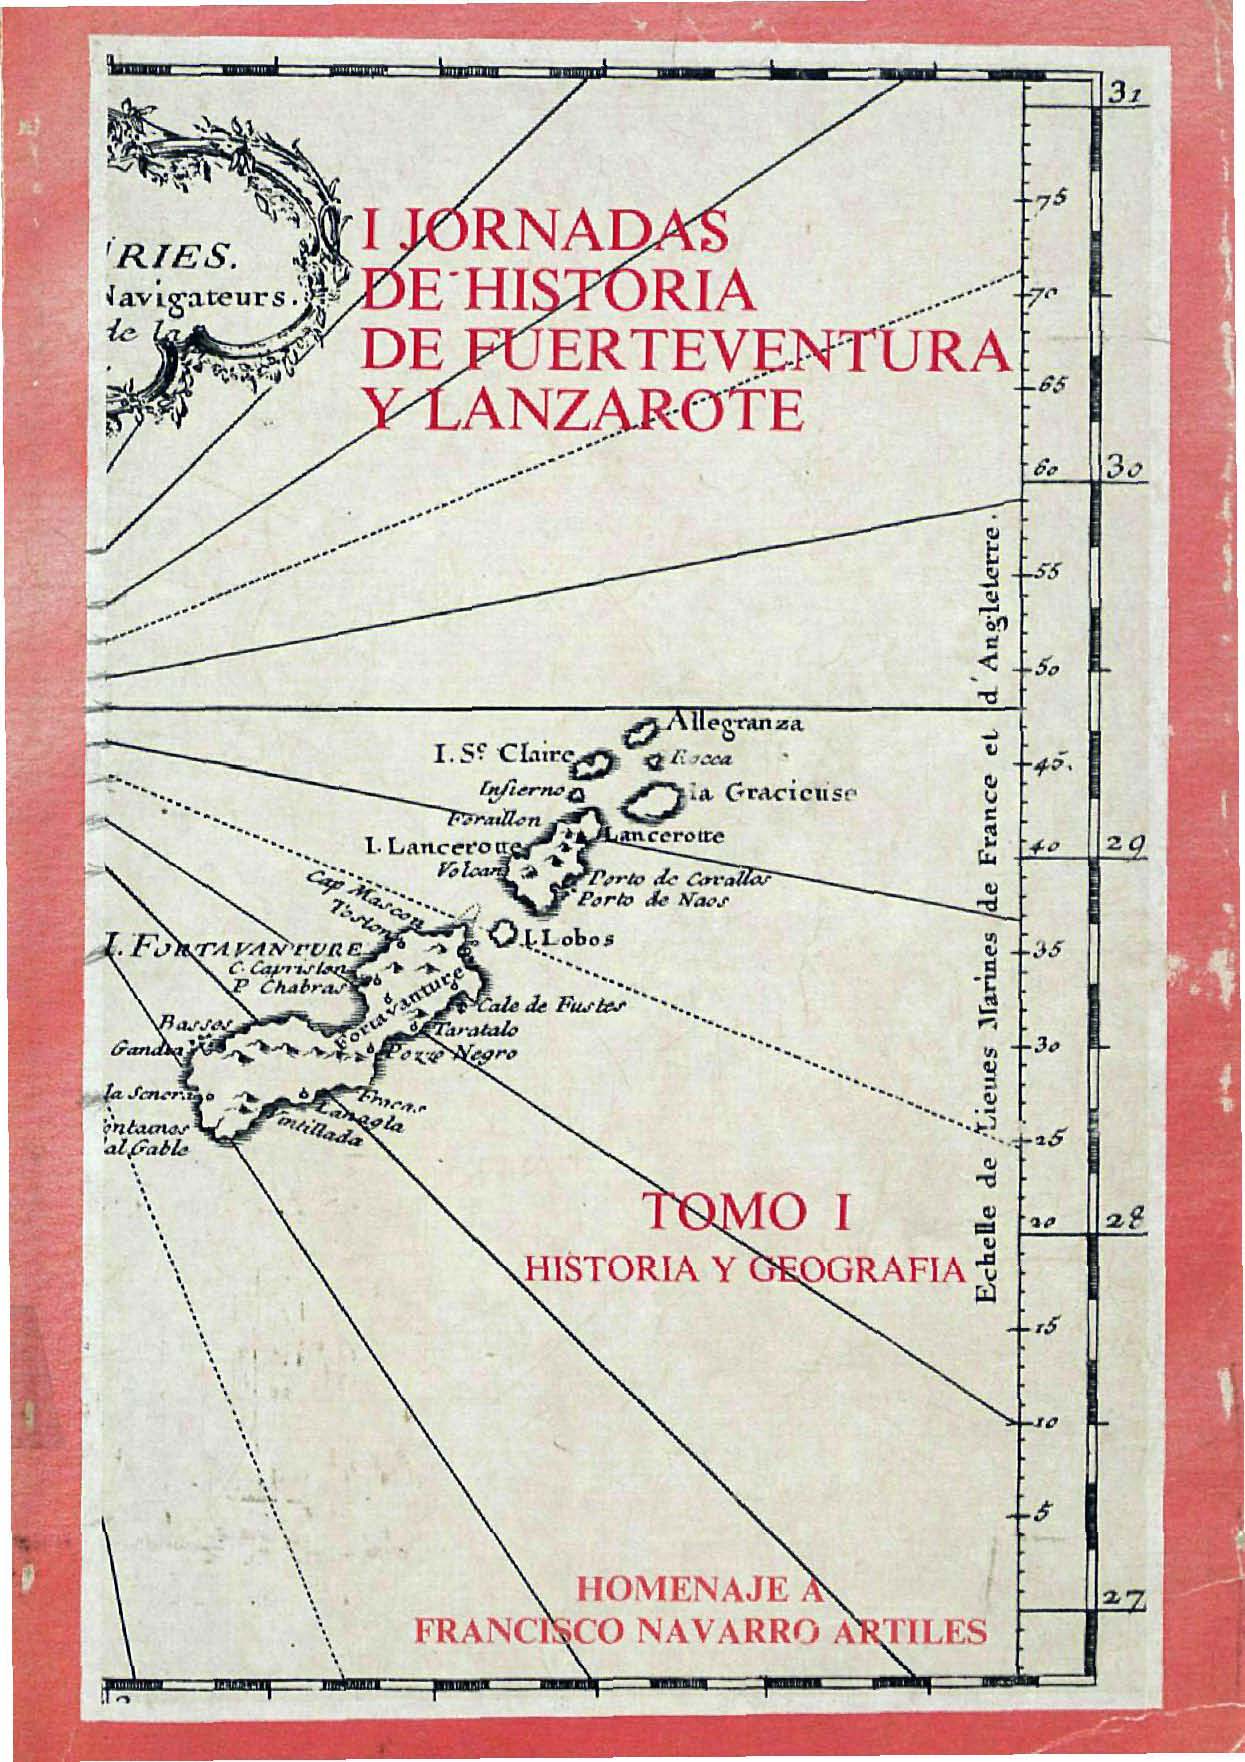 1720: motines en Lanzarote y Fuerteventura